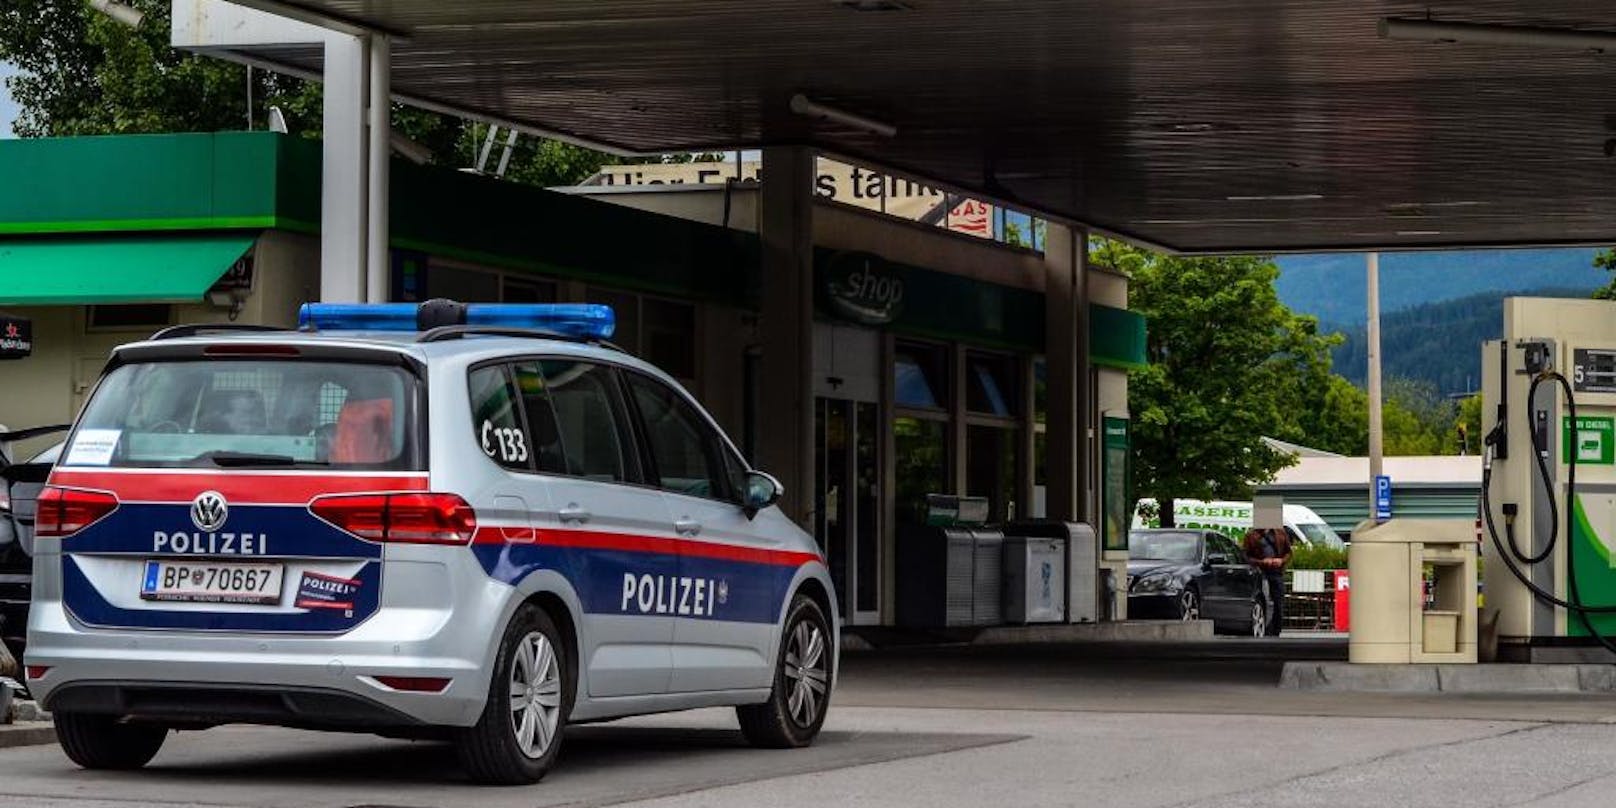 Auf einer Tankstelle in Innsbruck beschlagnahmte die Polizei am Dienstag (6.6.2017) zwei Glücksspielautomaten und sperrten die komplette Tankstelle.